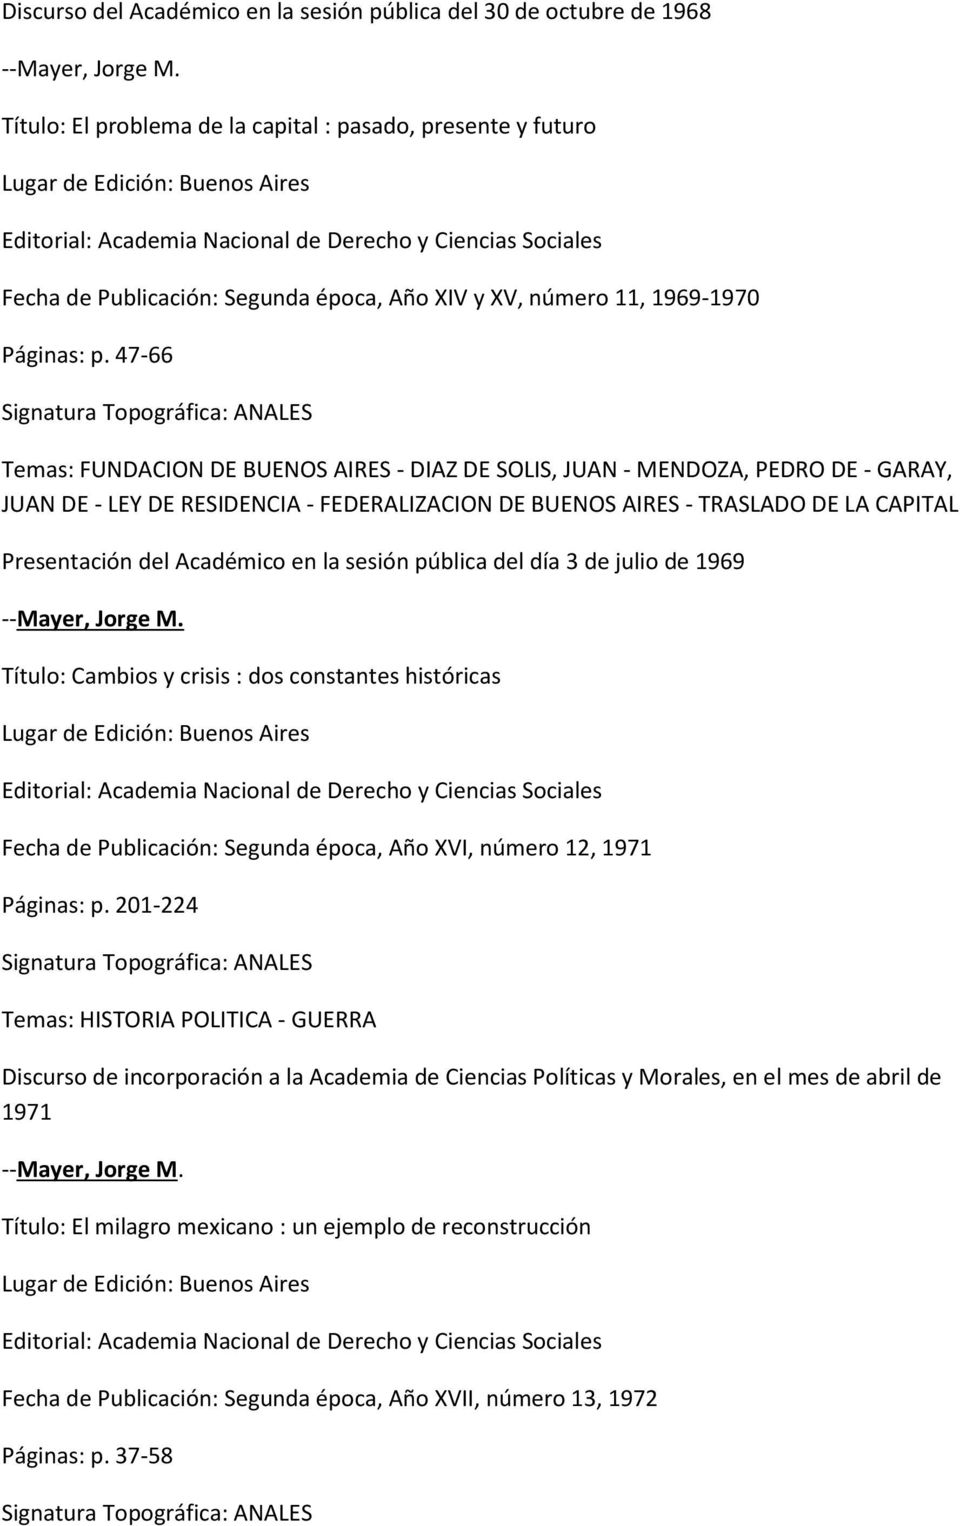 47-66 Temas: FUNDACION DE BUENOS AIRES - DIAZ DE SOLIS, JUAN - MENDOZA, PEDRO DE - GARAY, JUAN DE - LEY DE RESIDENCIA - FEDERALIZACION DE BUENOS AIRES - TRASLADO DE LA CAPITAL Presentación del